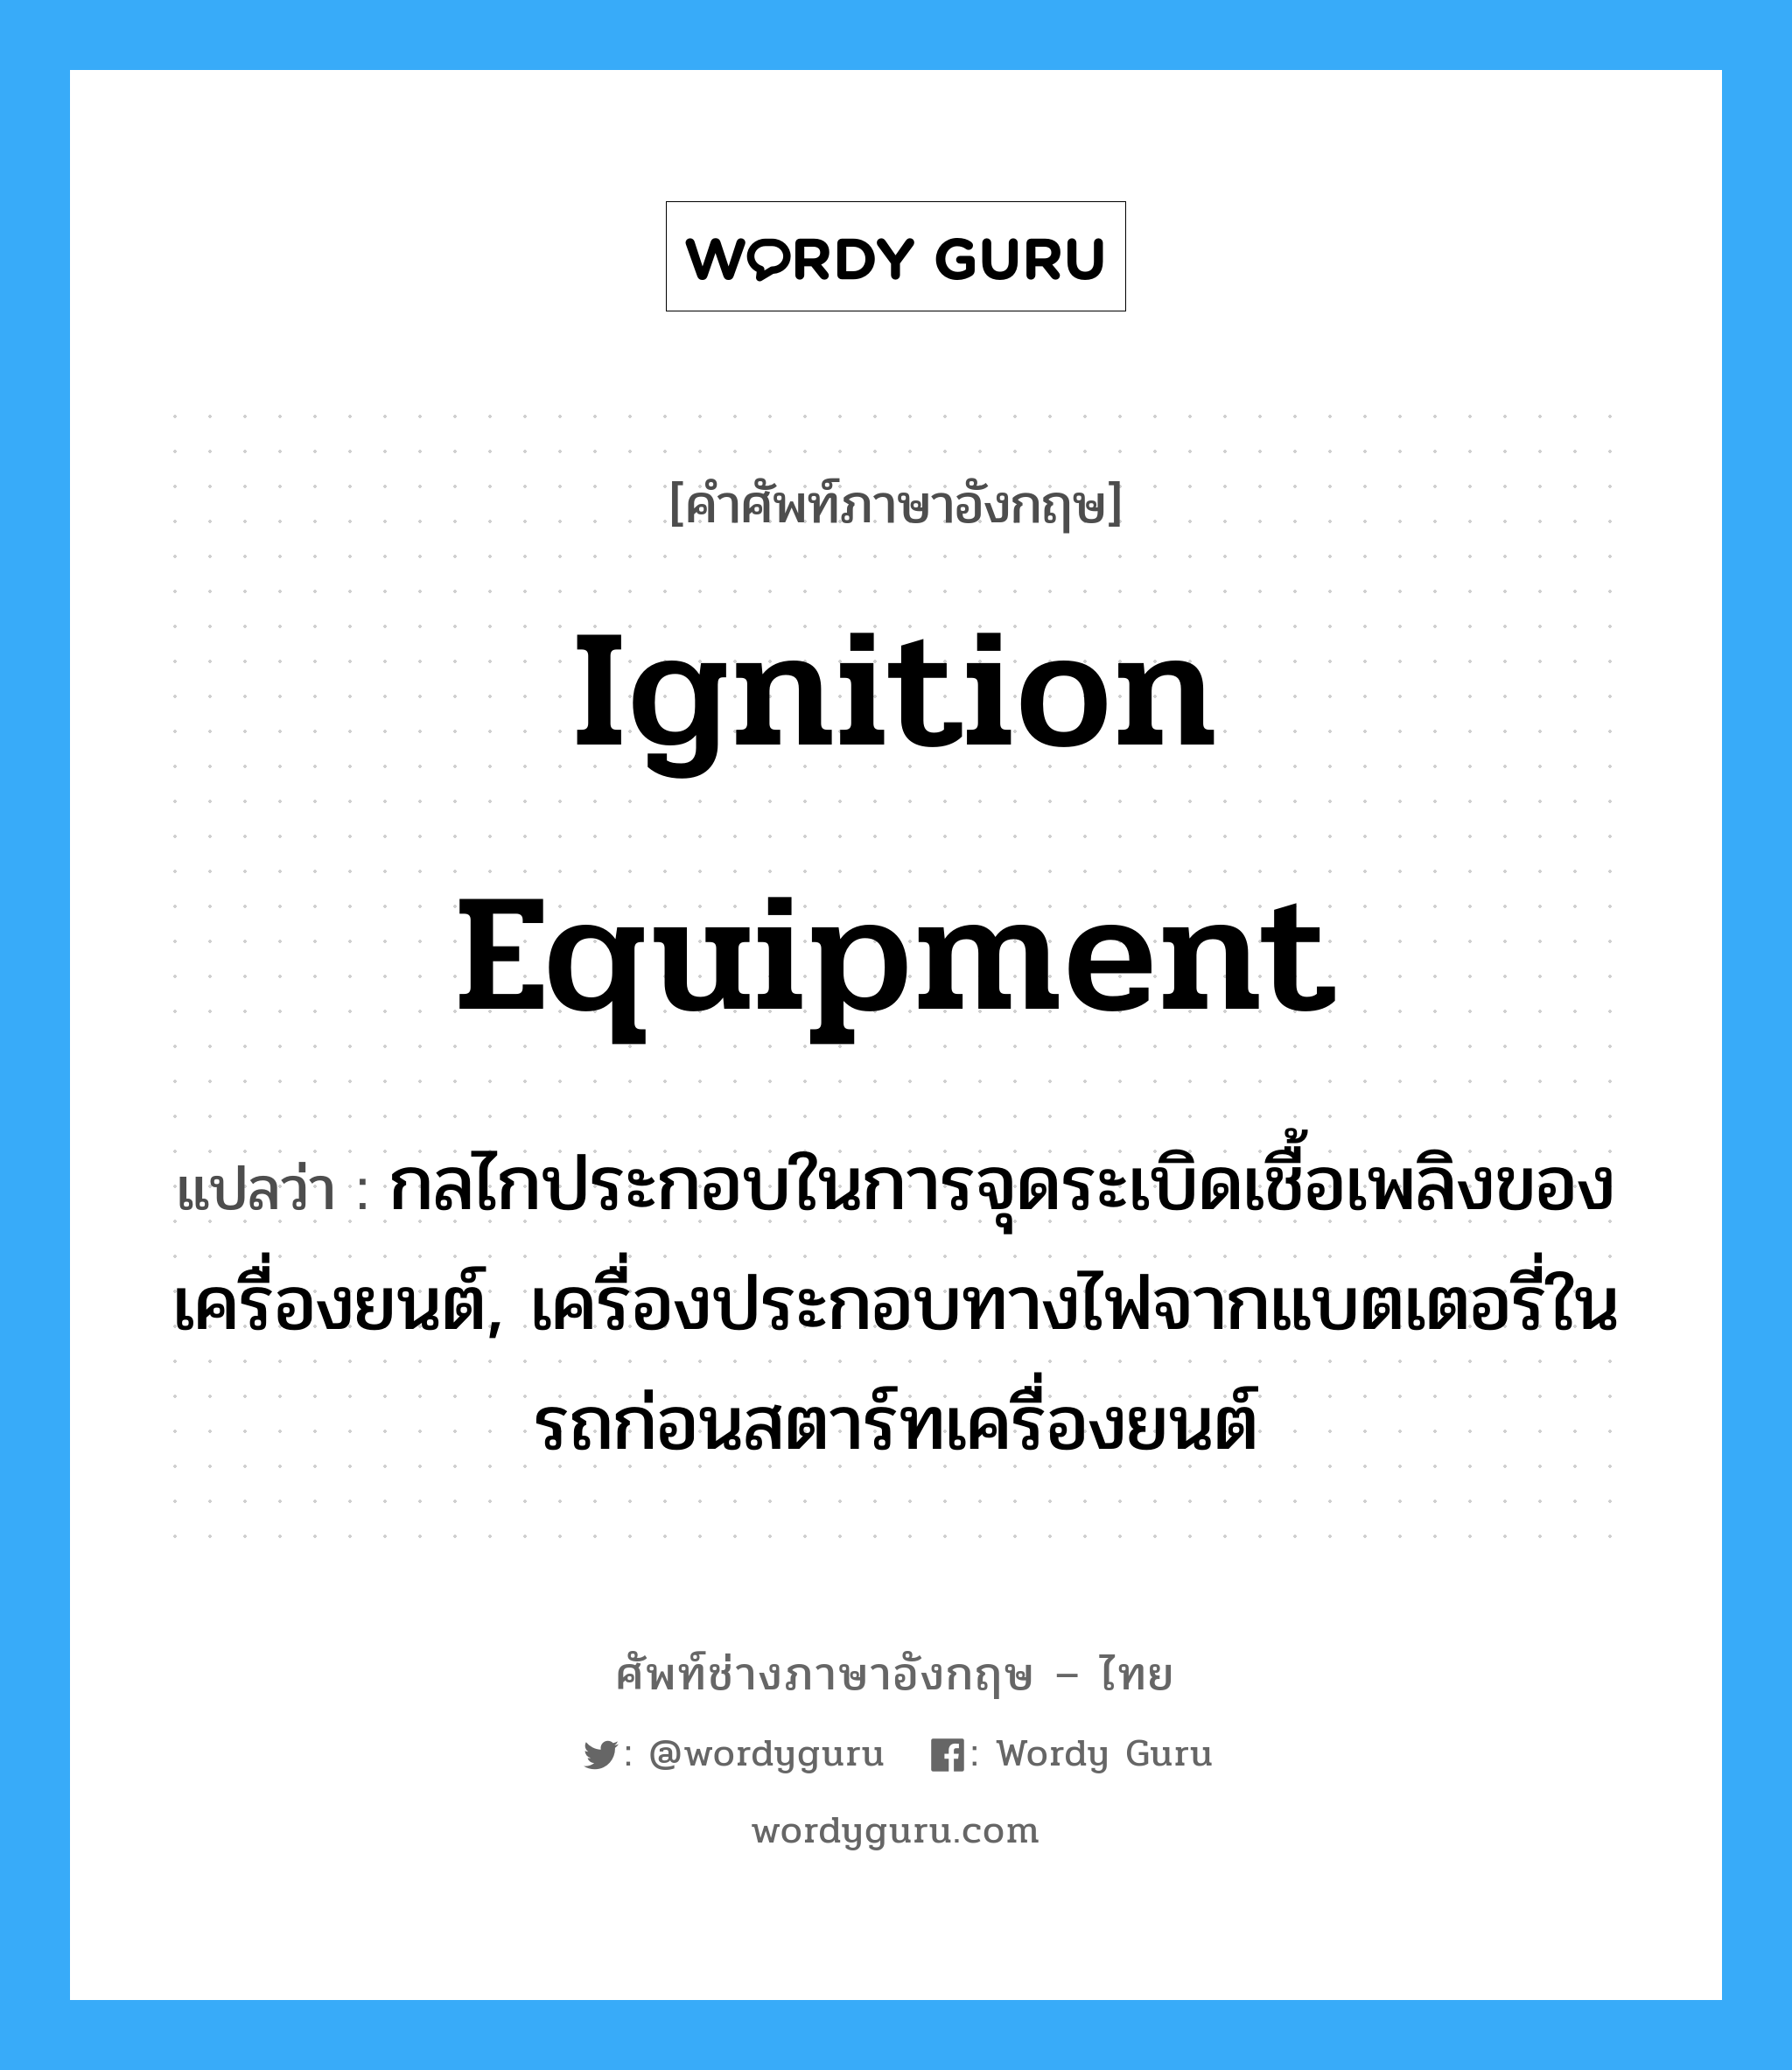 ignition equipment แปลว่า?, คำศัพท์ช่างภาษาอังกฤษ - ไทย ignition equipment คำศัพท์ภาษาอังกฤษ ignition equipment แปลว่า กลไกประกอบในการจุดระเบิดเชื้อเพลิงของเครื่องยนต์, เครื่องประกอบทางไฟจากแบตเตอรี่ในรถก่อนสตาร์ทเครื่องยนต์